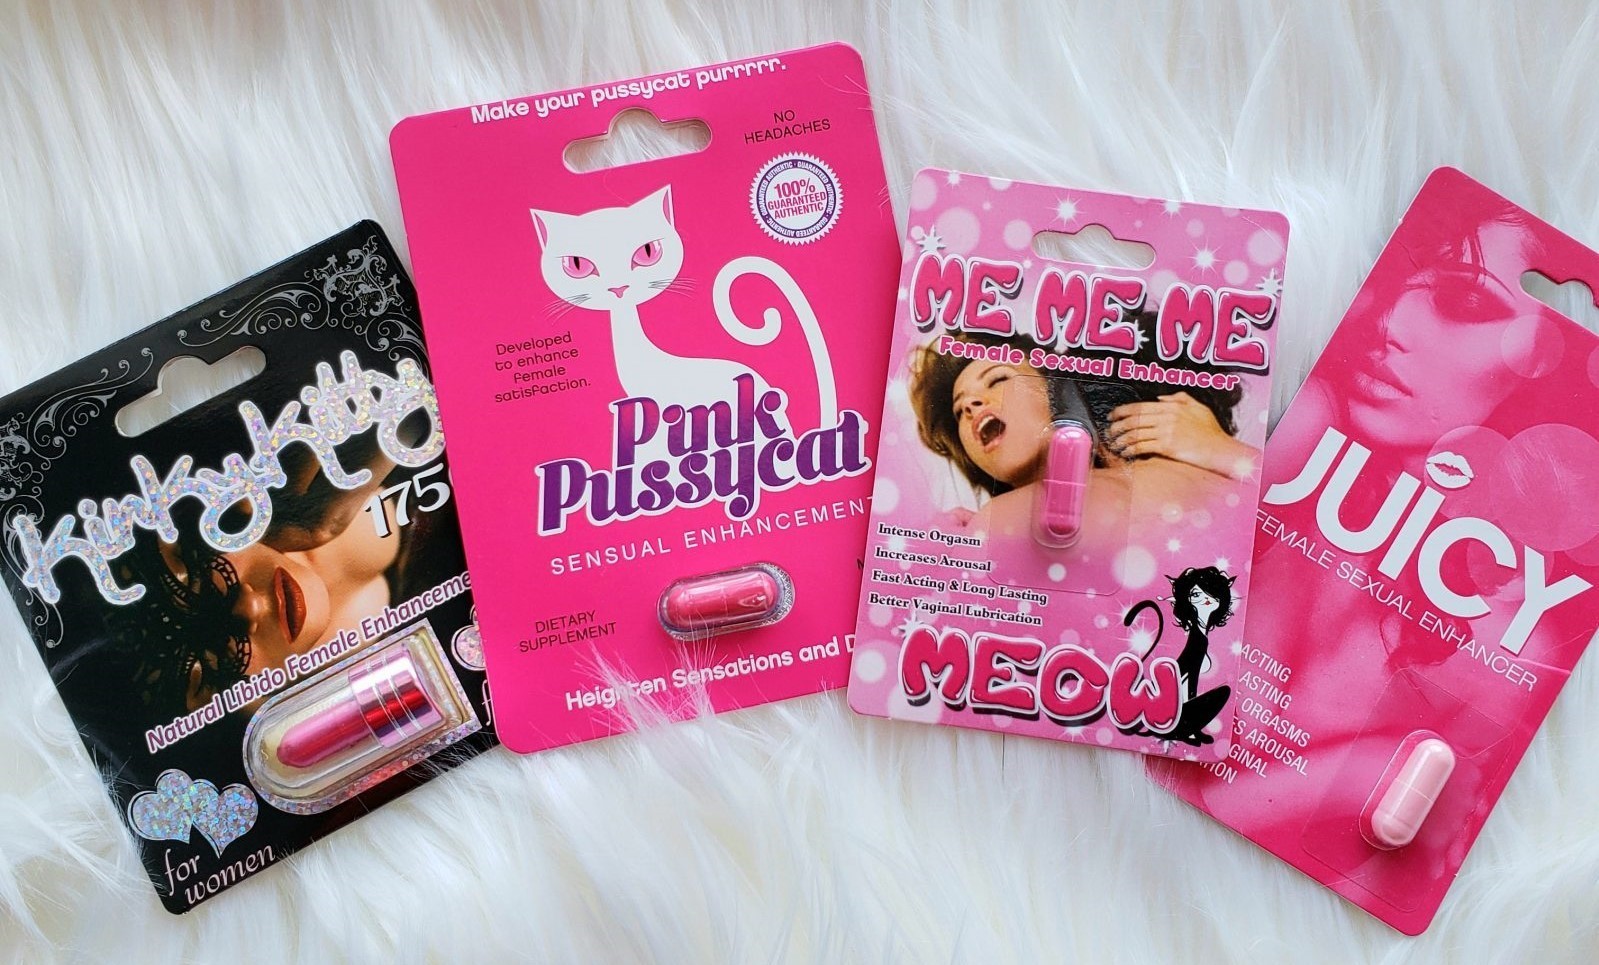 Pink pussycat boutique reviews